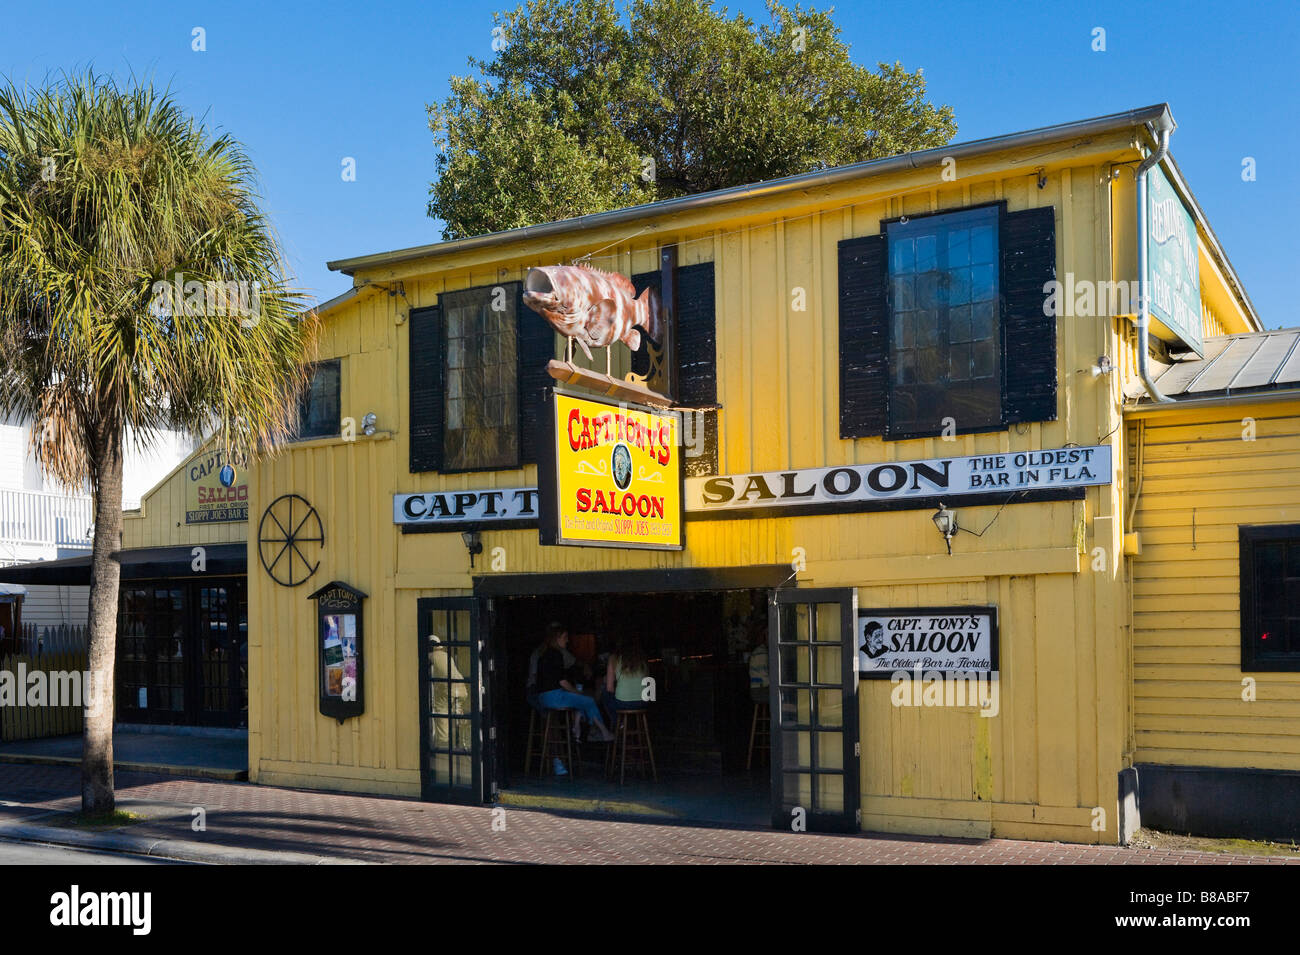 Le Capt Tony's Saloon (l'original Sloppy Joes et qui prétend être le plus ancien bar en Floride) Vieille ville, Key West, Florida Keys, USA Banque D'Images